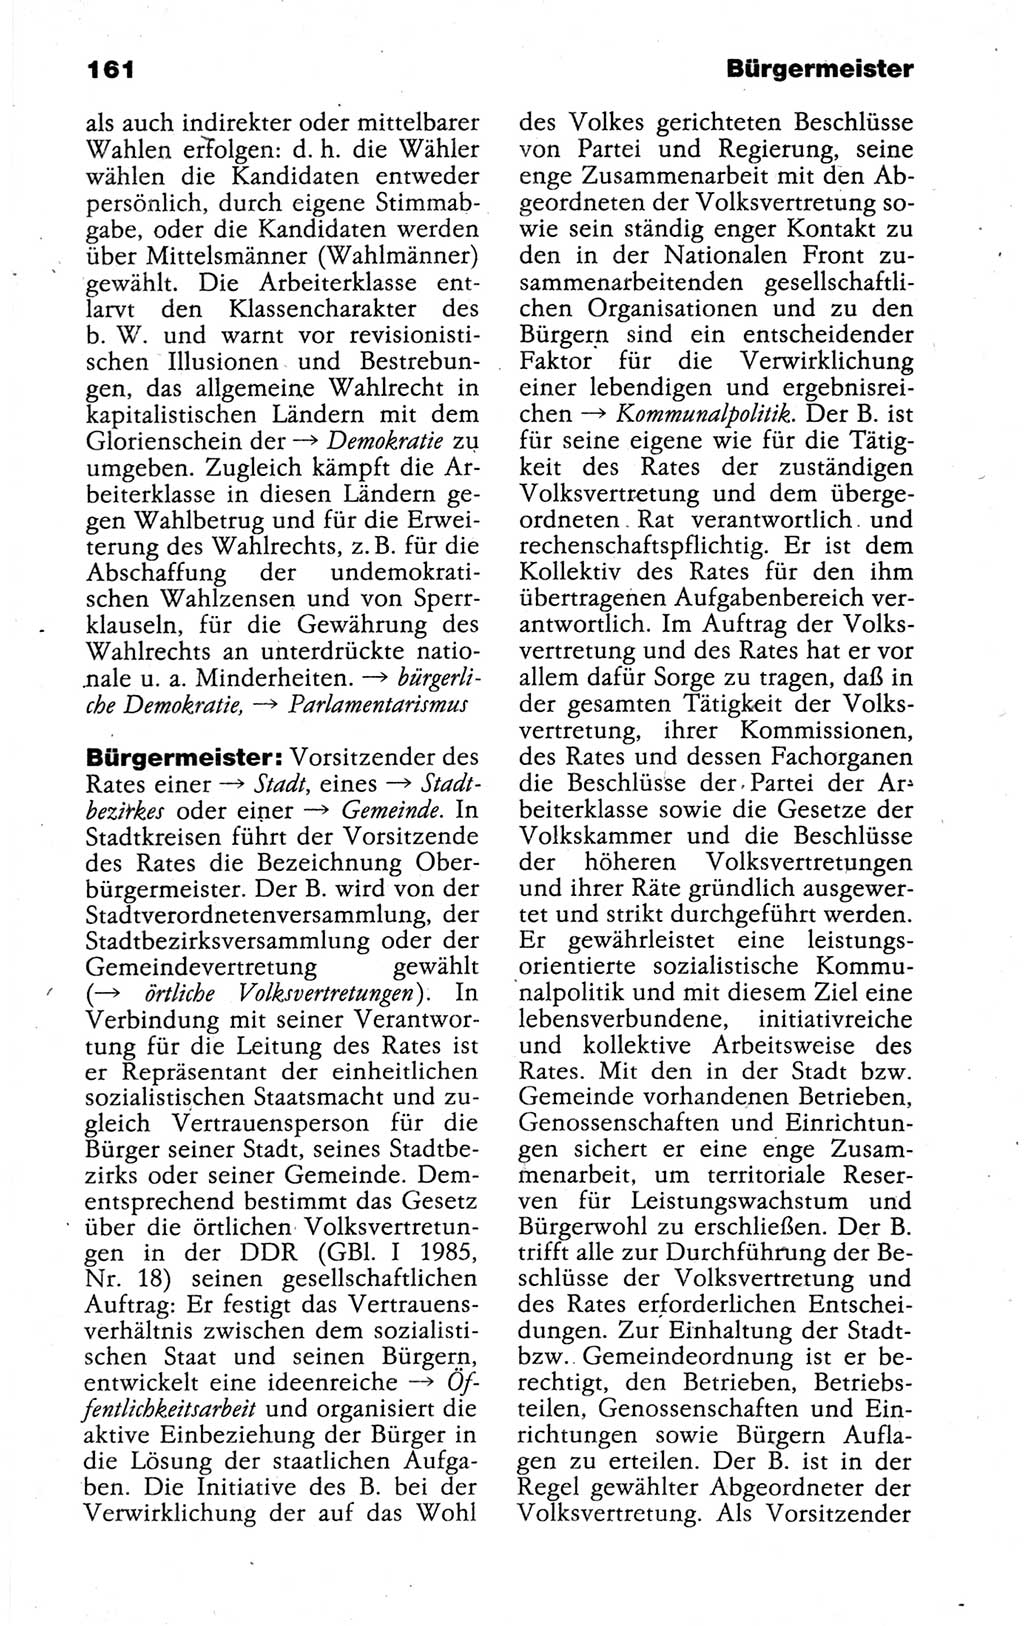 Kleines politisches Wörterbuch [Deutsche Demokratische Republik (DDR)] 1988, Seite 161 (Kl. pol. Wb. DDR 1988, S. 161)